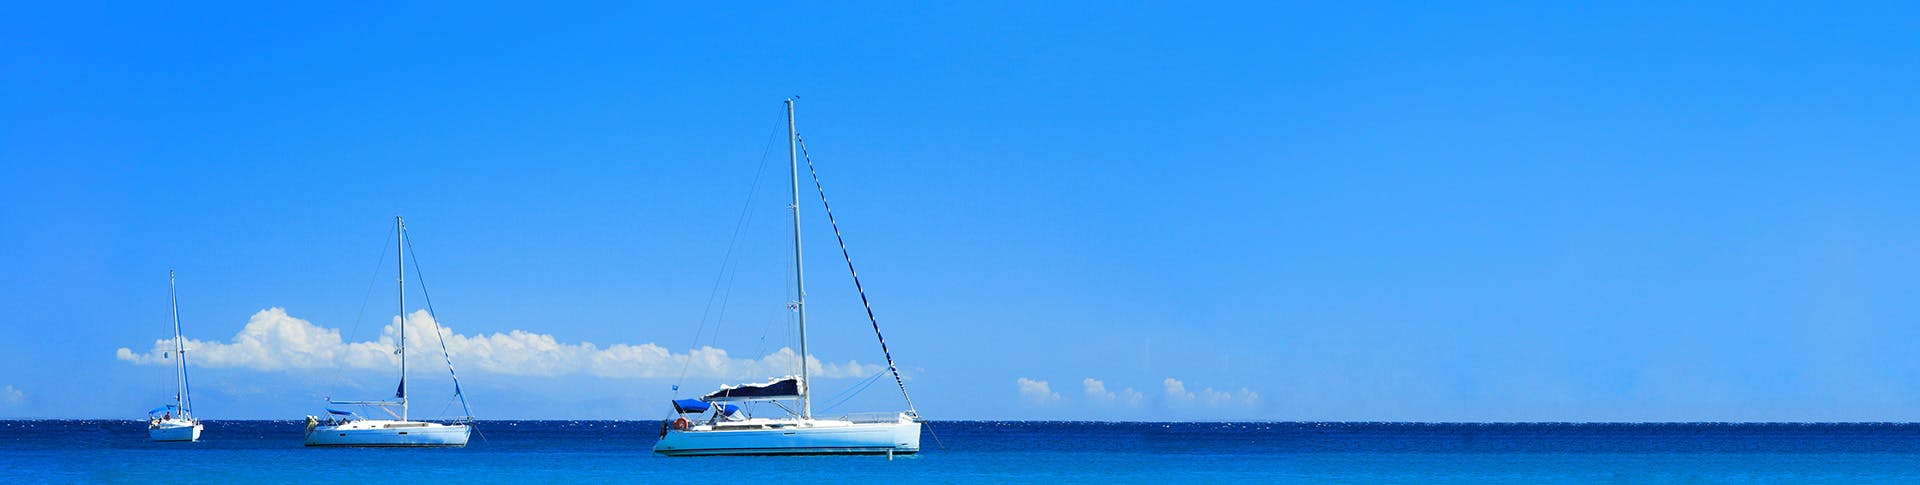 sailing yachts at anchor in a blue lagoon